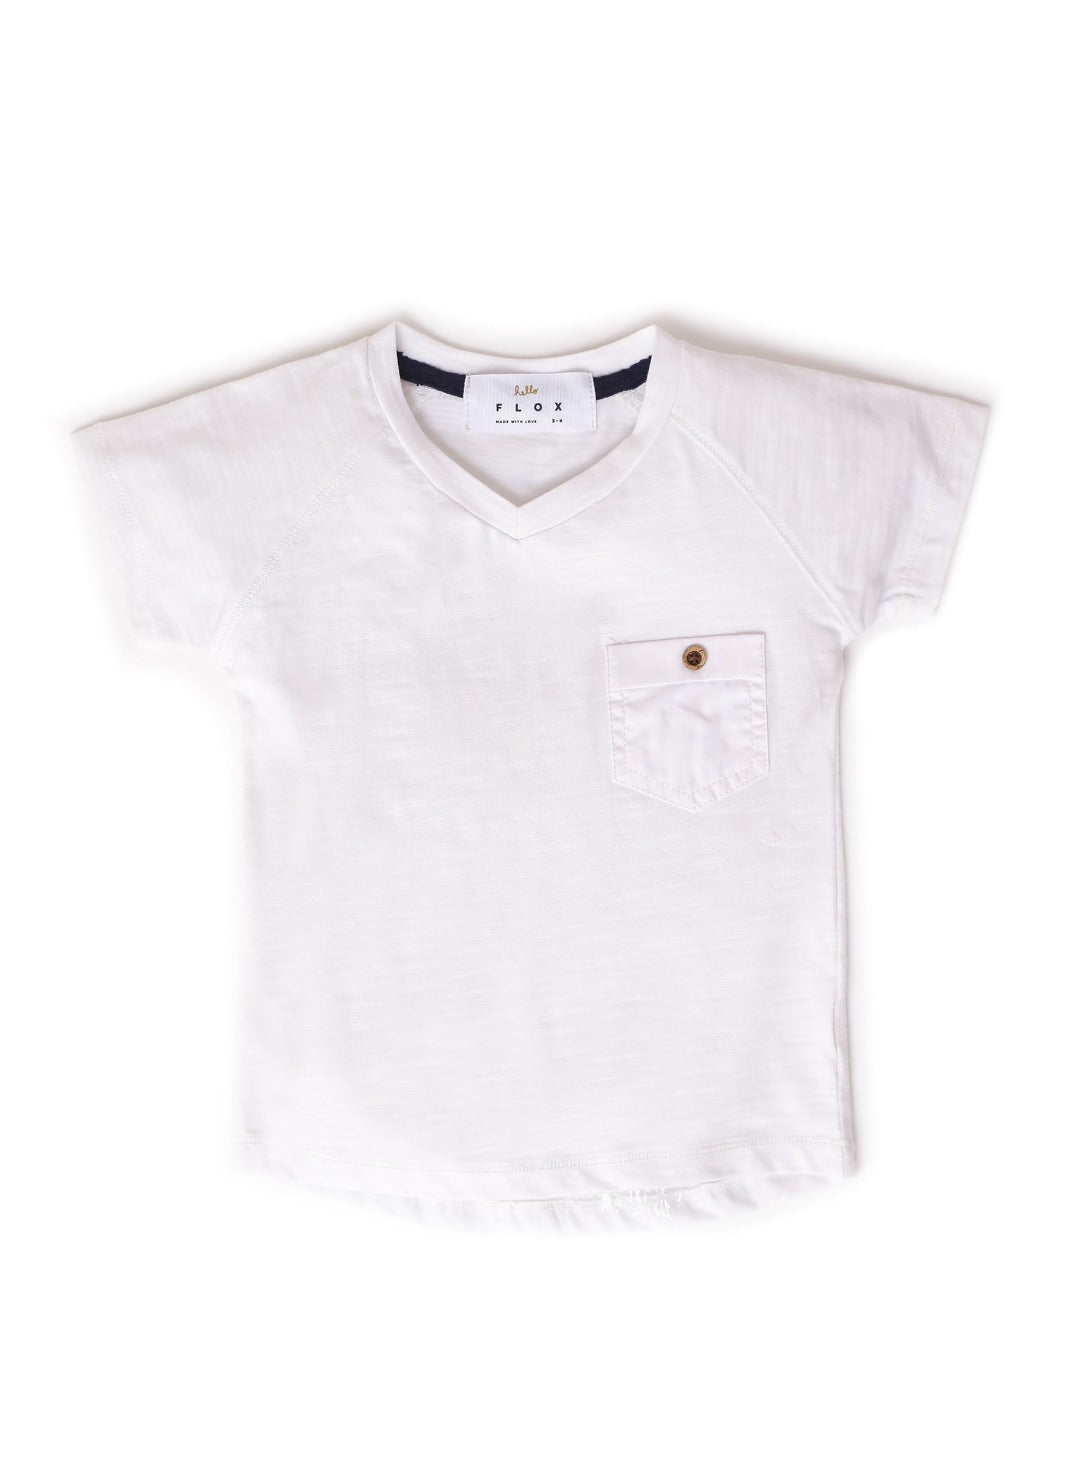 pearl white v-neck t-shirt